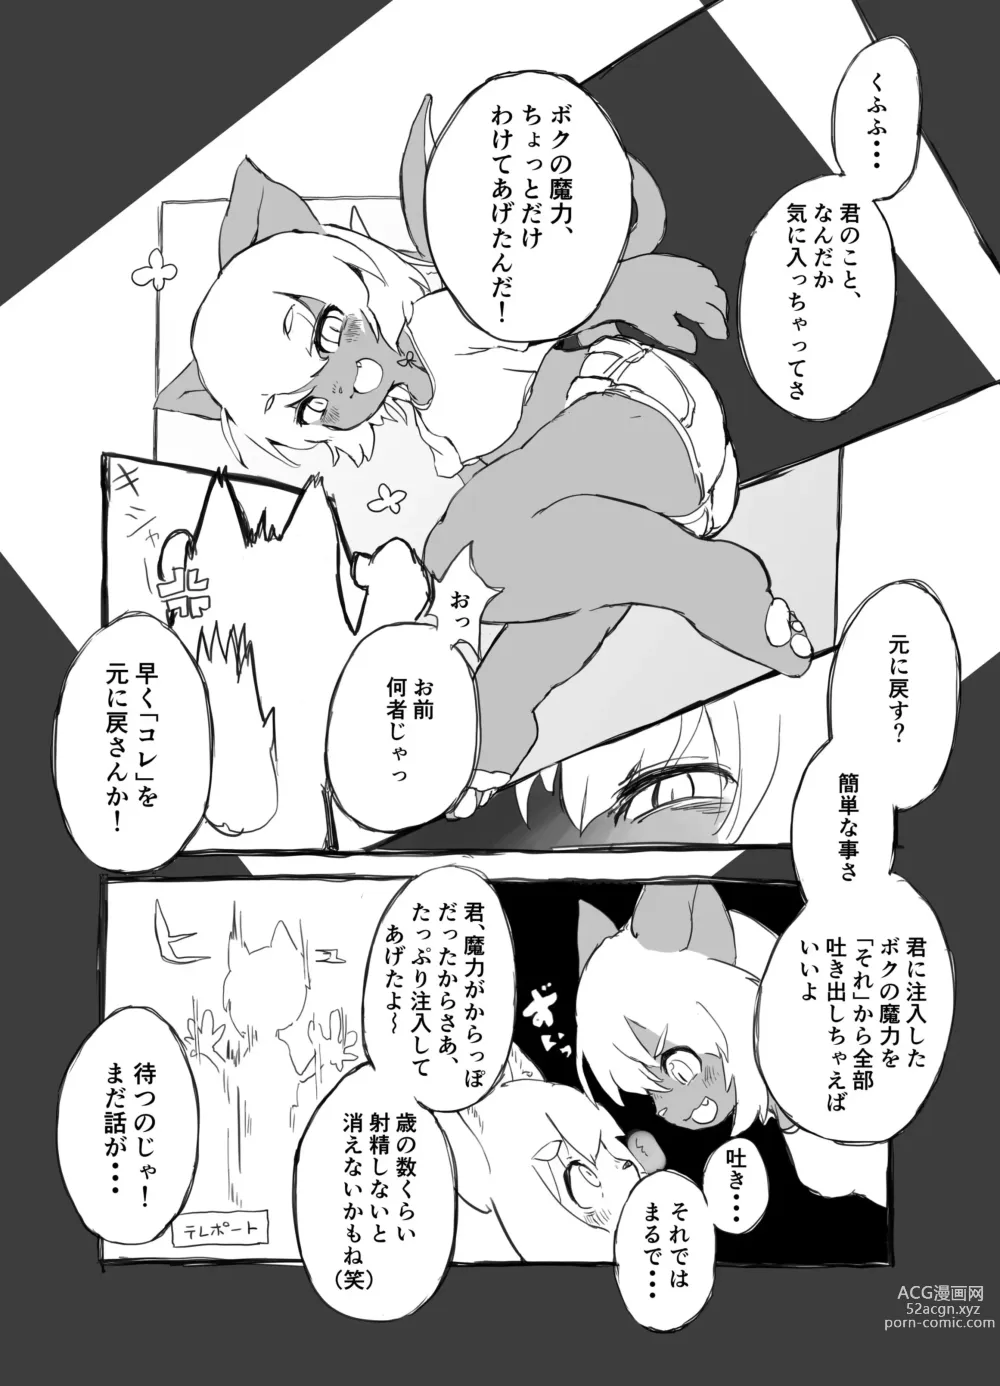 Page 4 of doujinshi Otsuru Kitsune